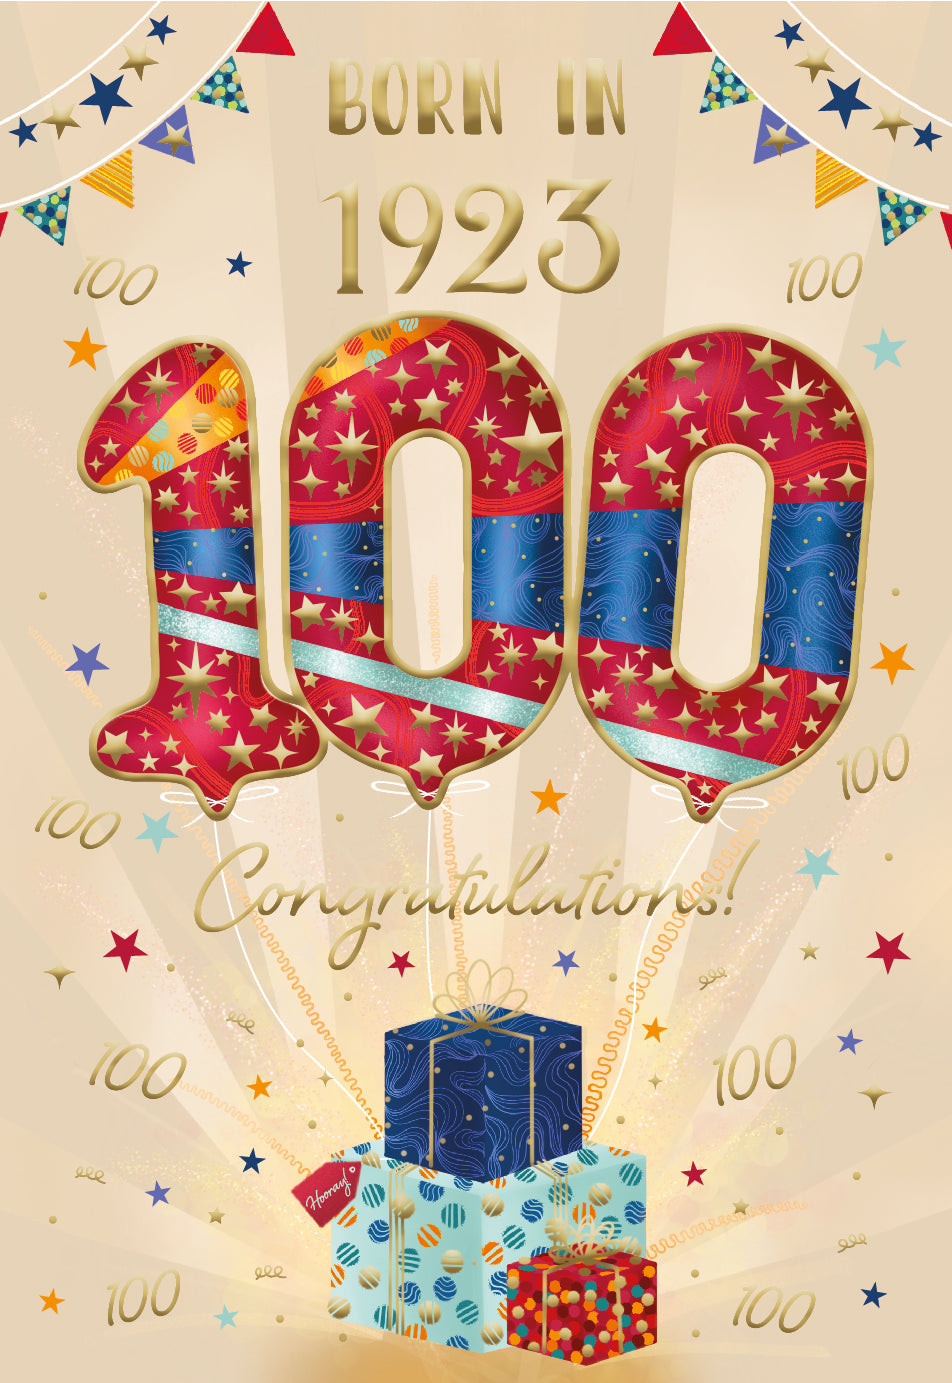 100th birthday card- born in 1923